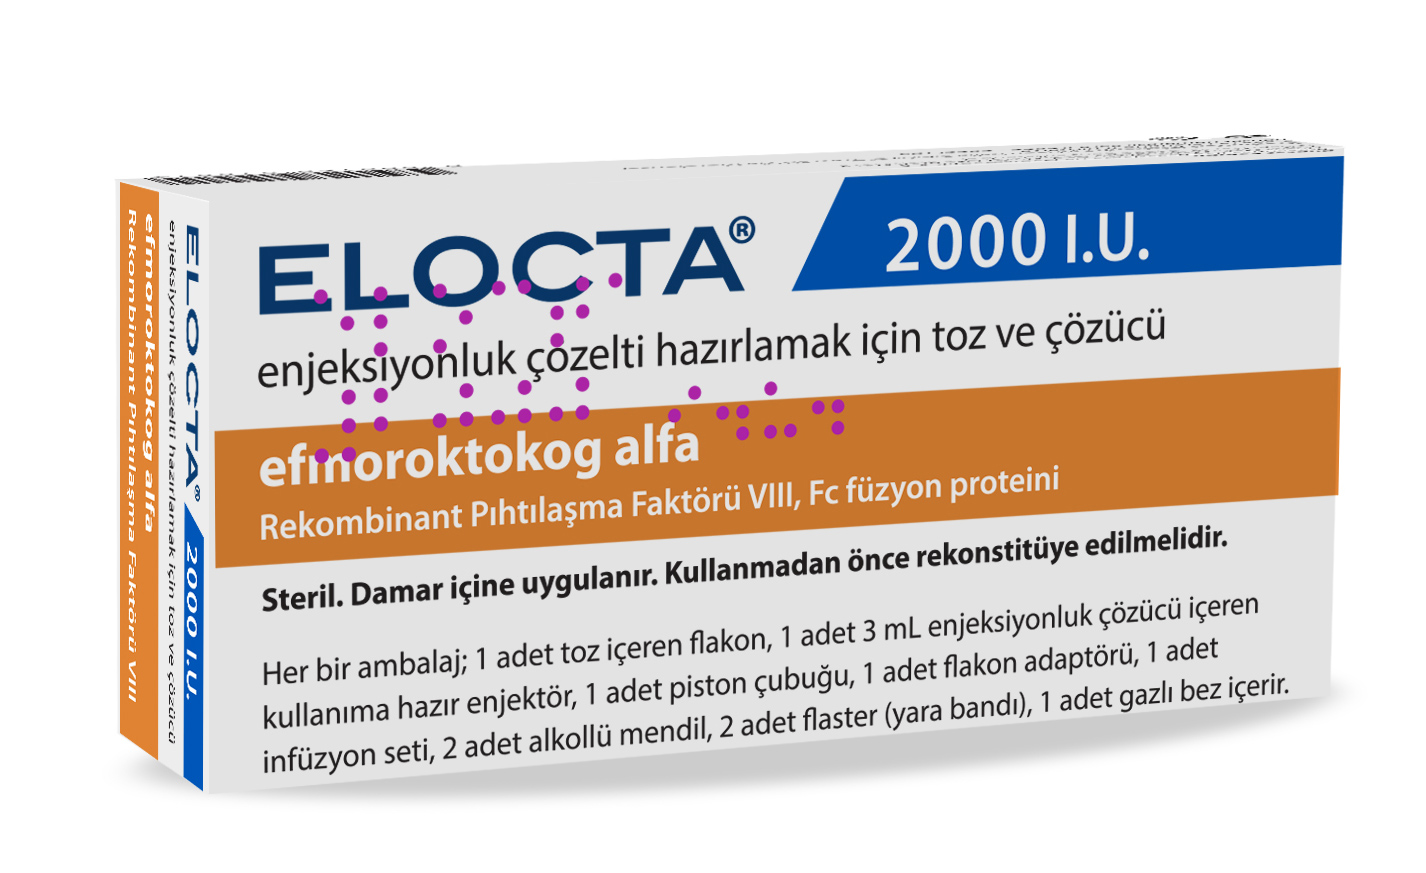 Elocta® 2000 I.U.